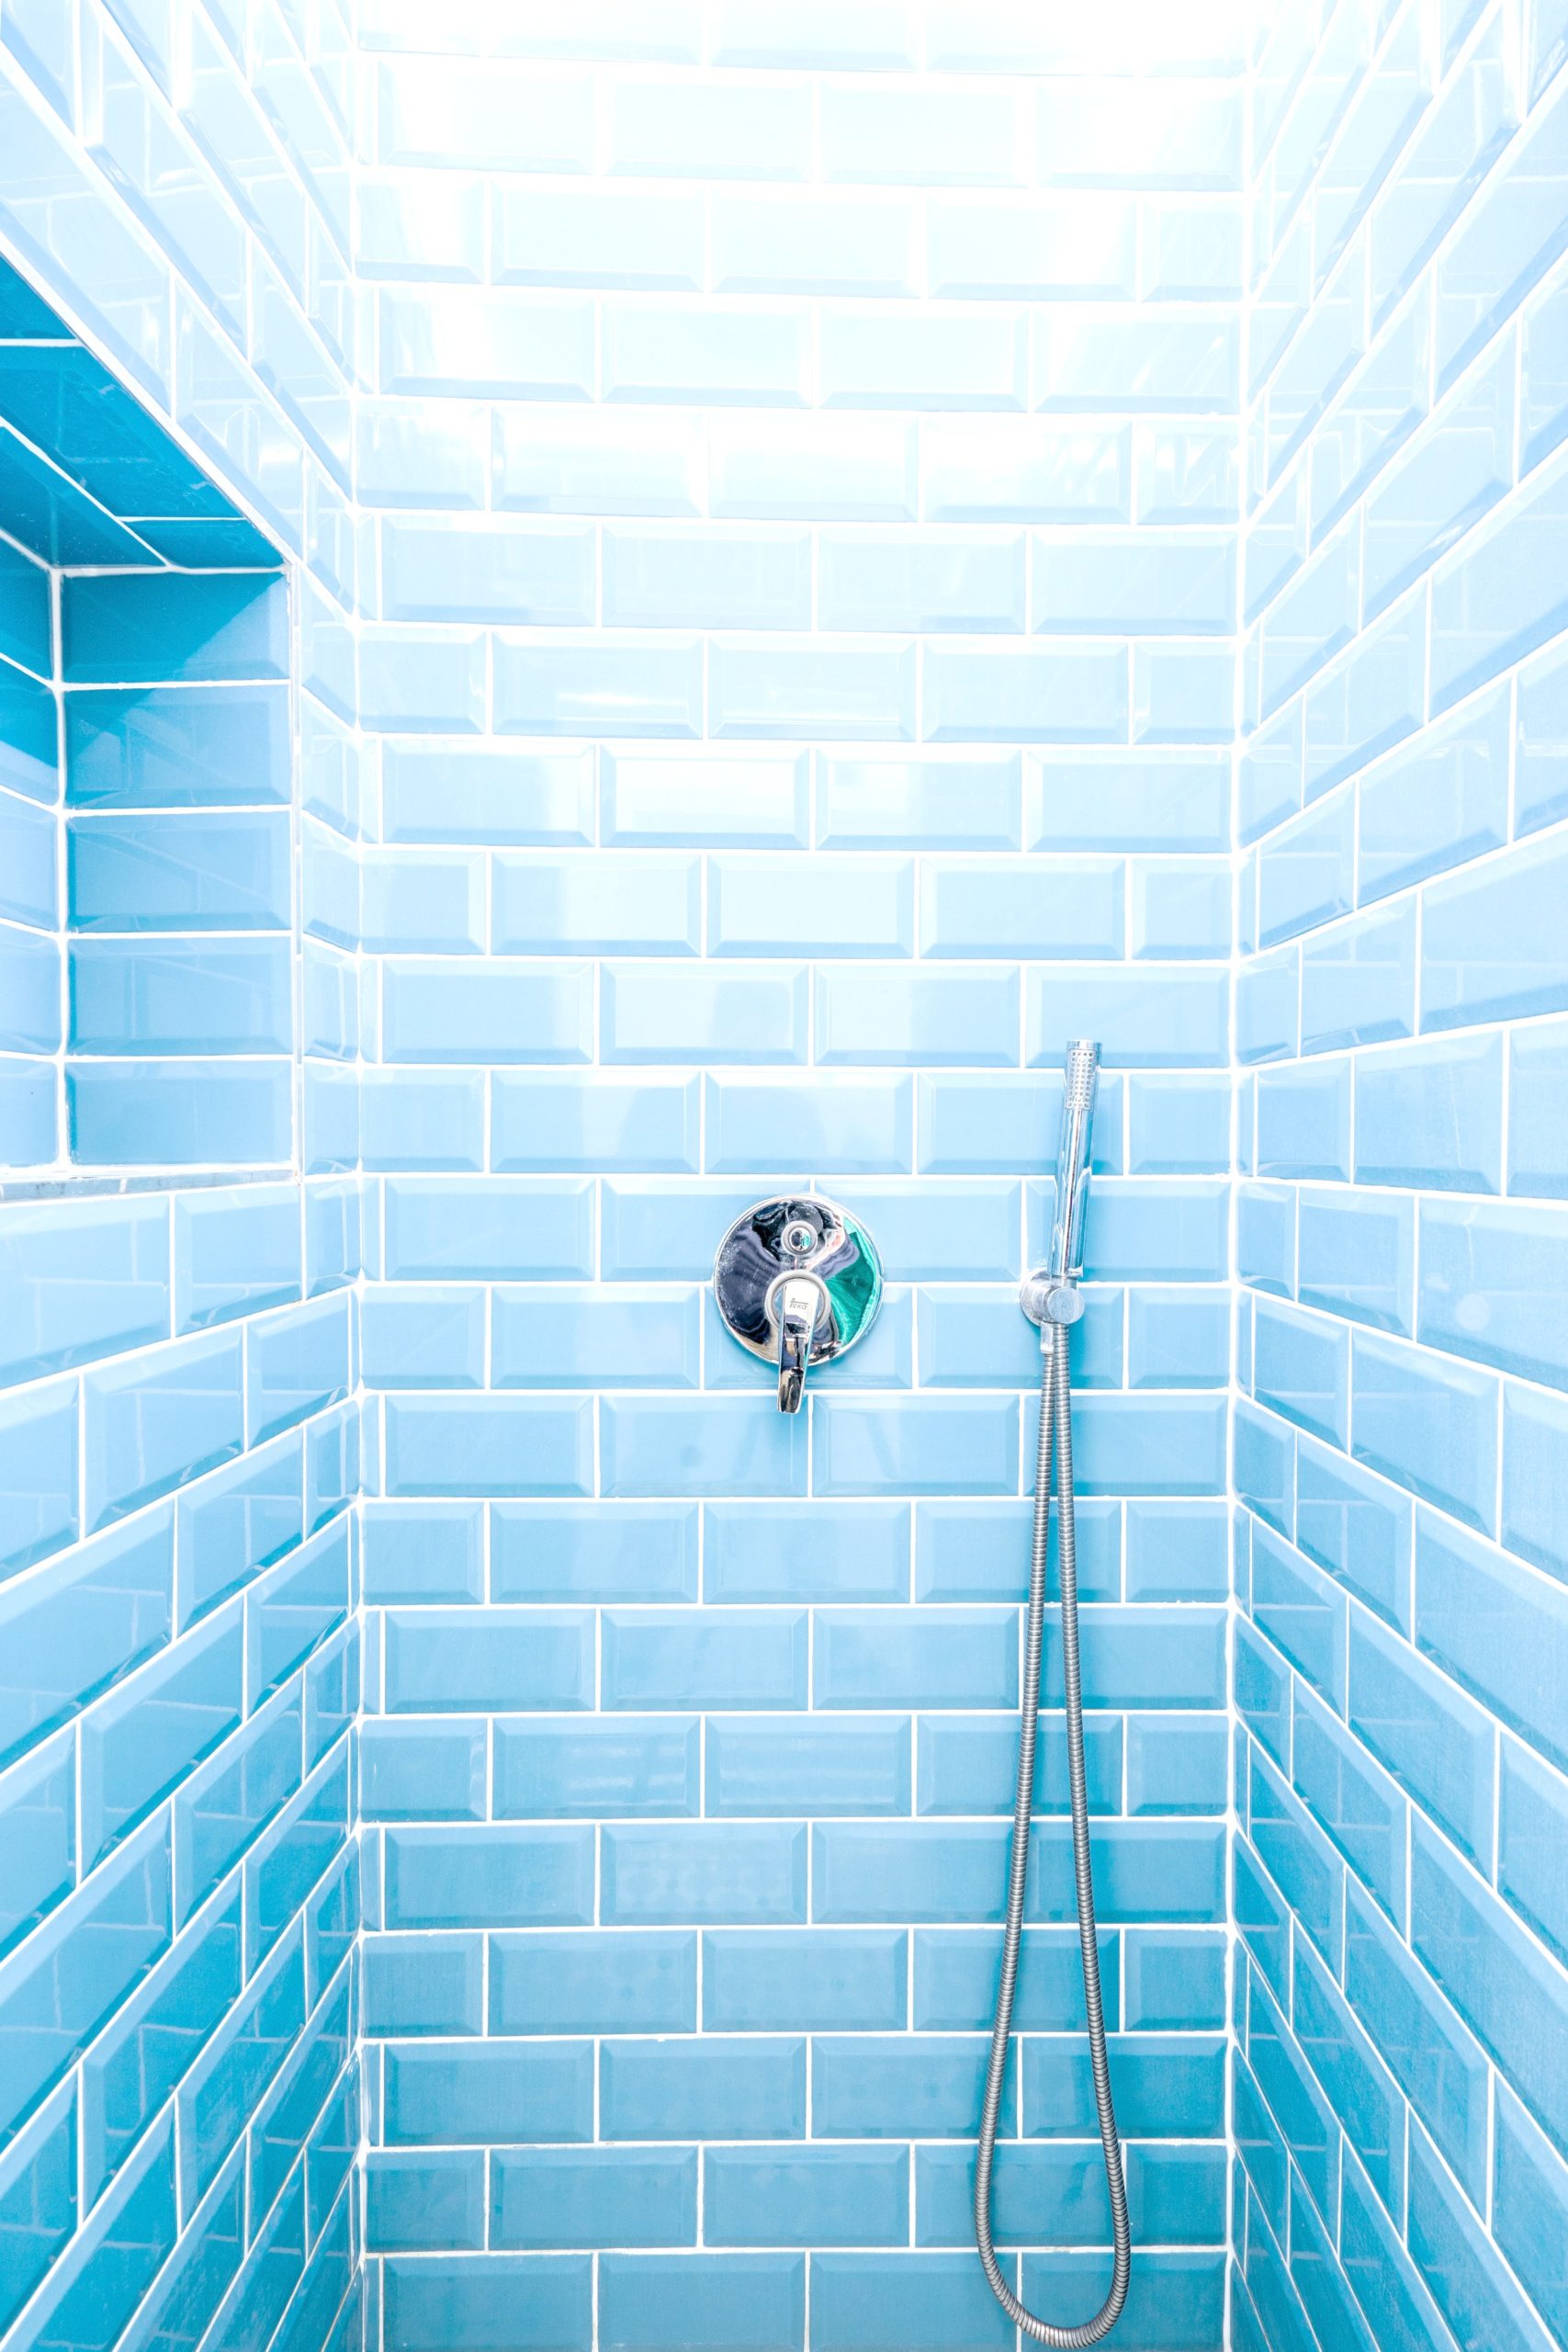 <img src="shower.jpg" alt="shower with blue tiles"/> 